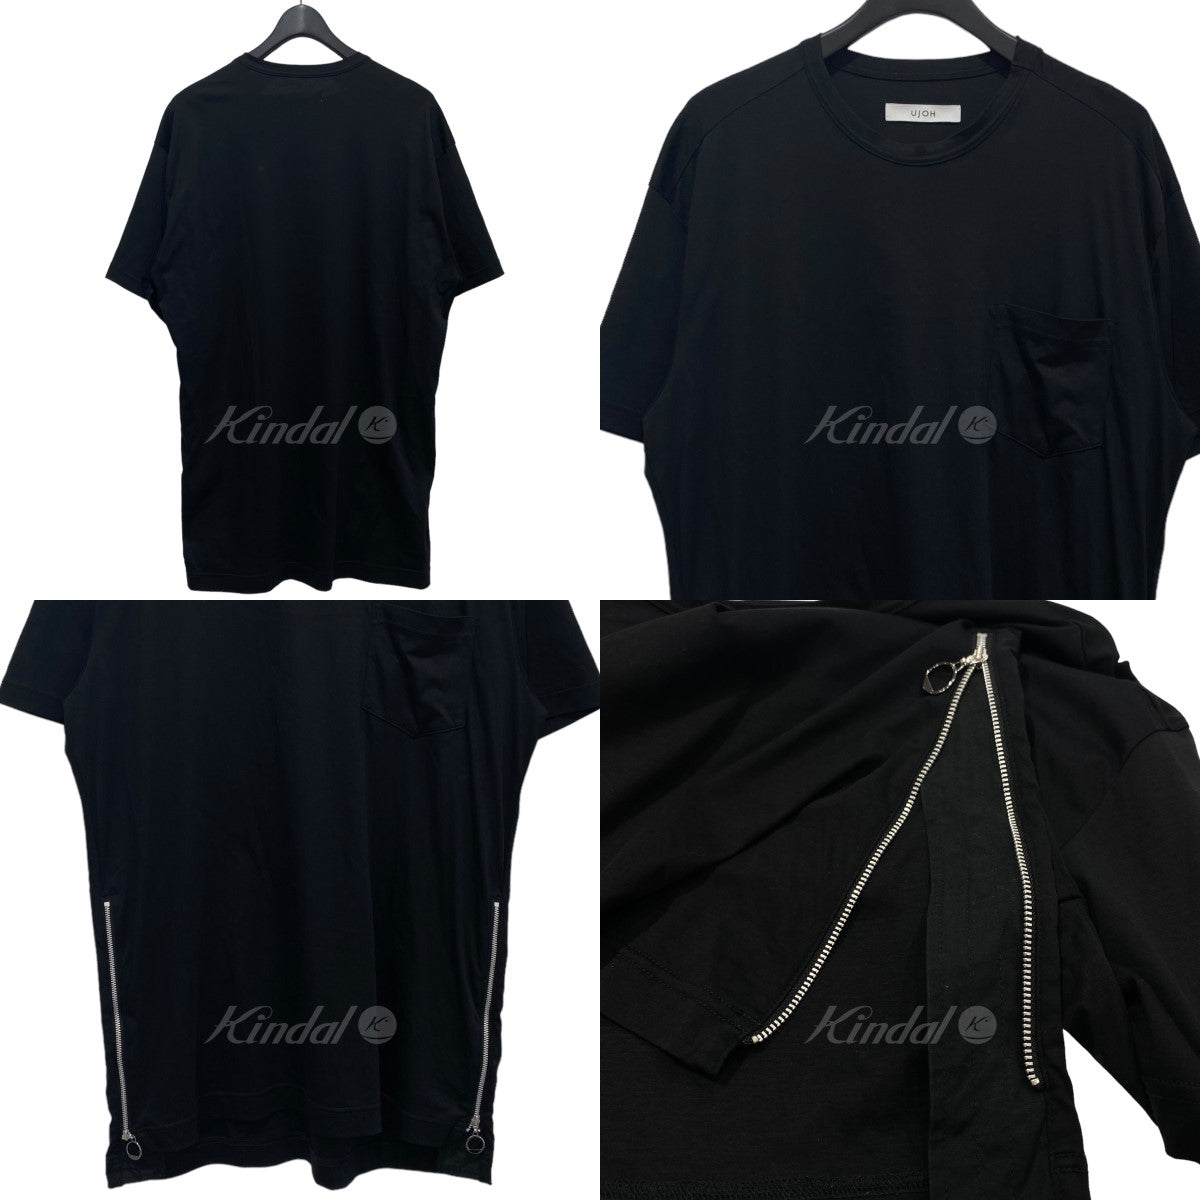 Ujoh(ウジョー) サイドジップTシャツ M781-T52-002 ブラック サイズ 14 